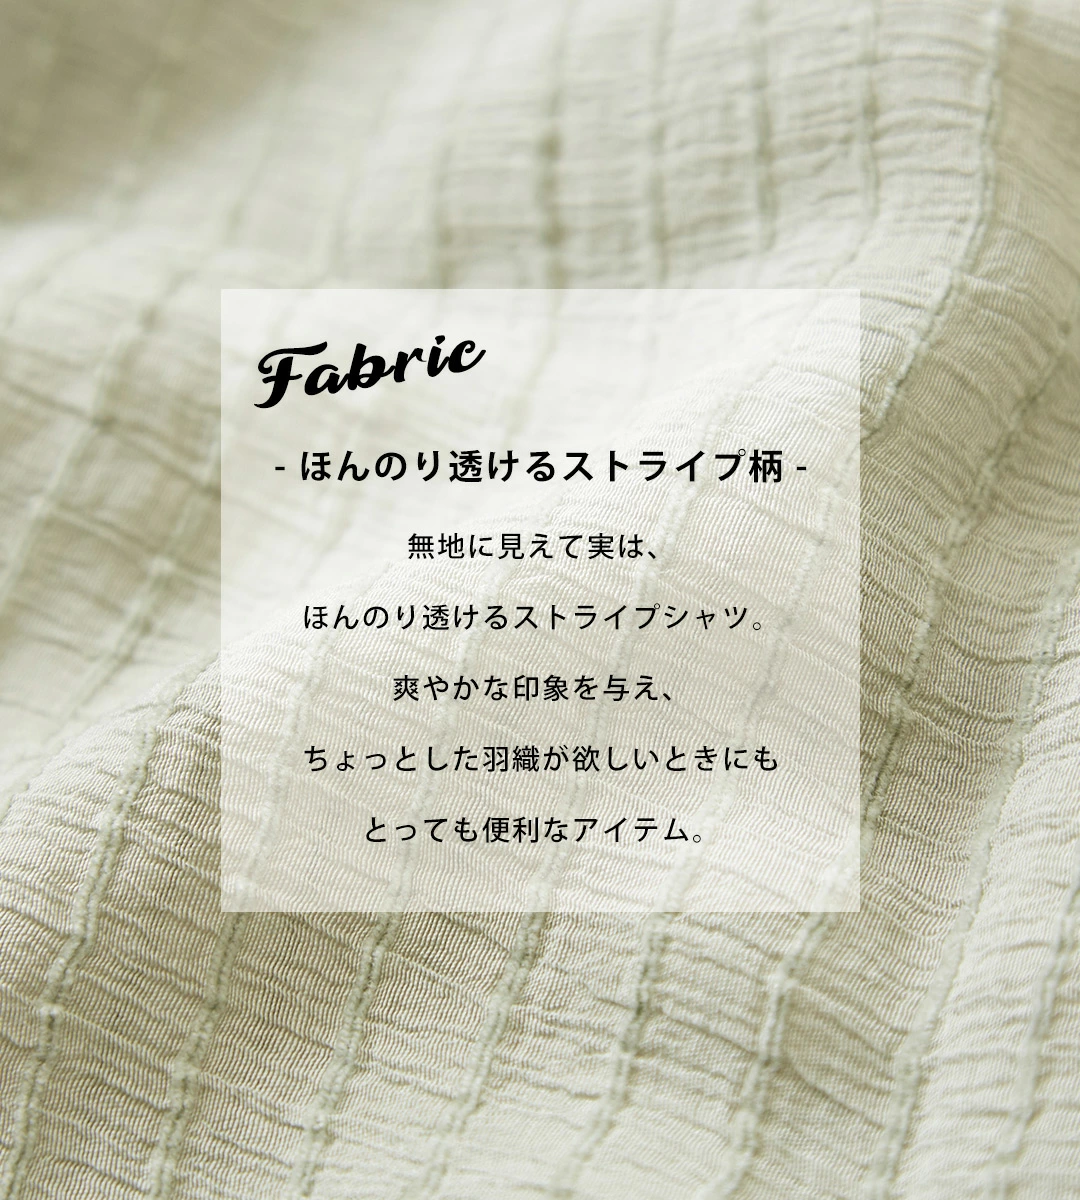 日本品牌 自然風直條連帽襯衫 3色 size